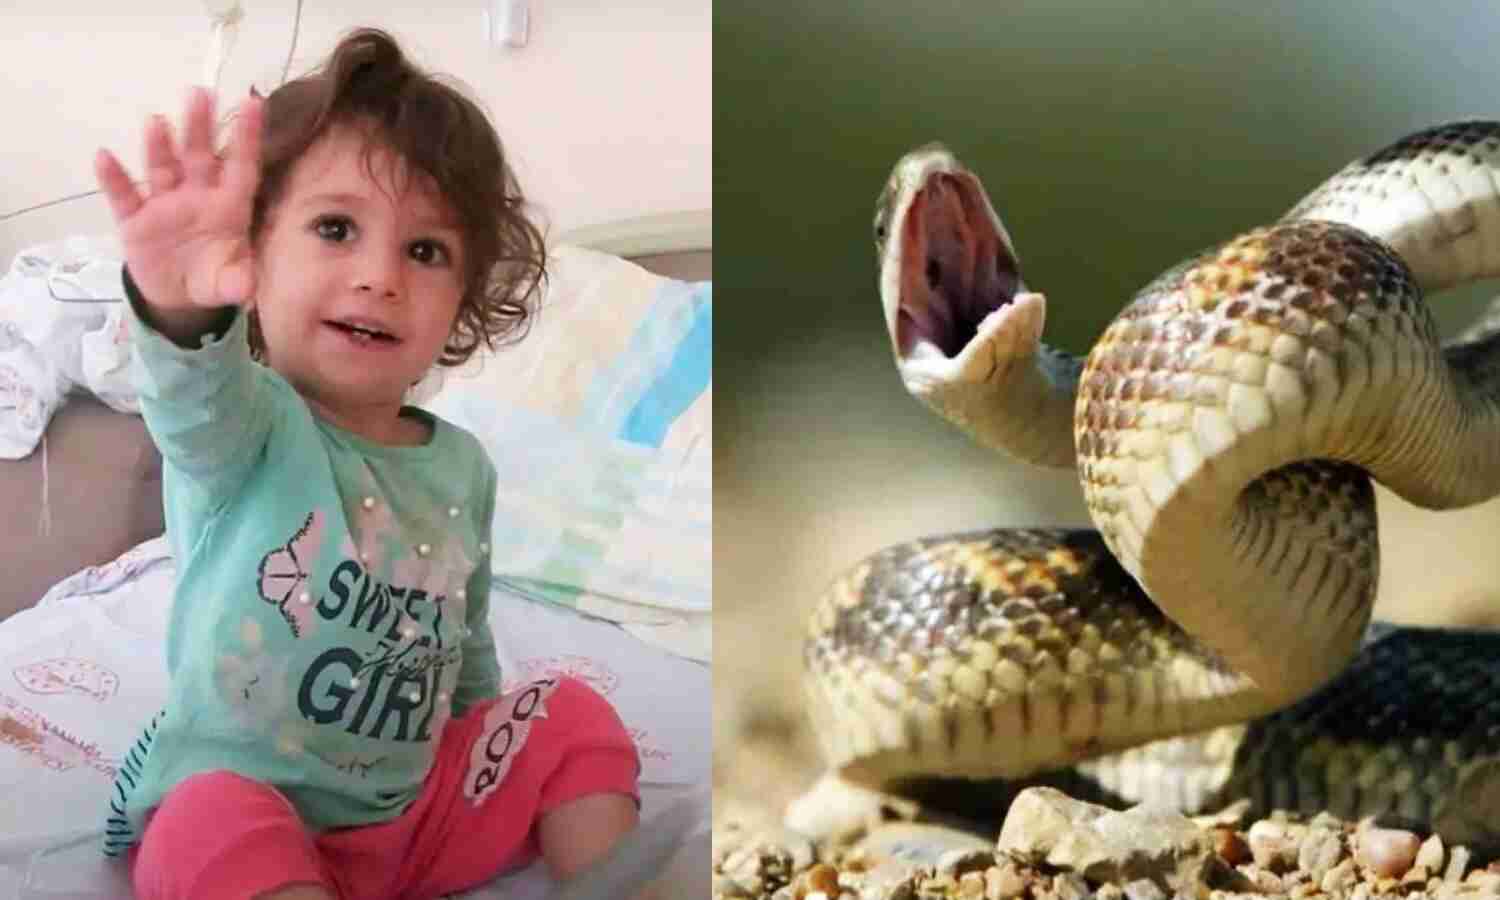 Turkey News : 2 साल की बच्ची को सांप ने काटा तो मासूम ने ले लिया बदला, गुस्से में आकर दांत से कर दिए दो टुकड़े